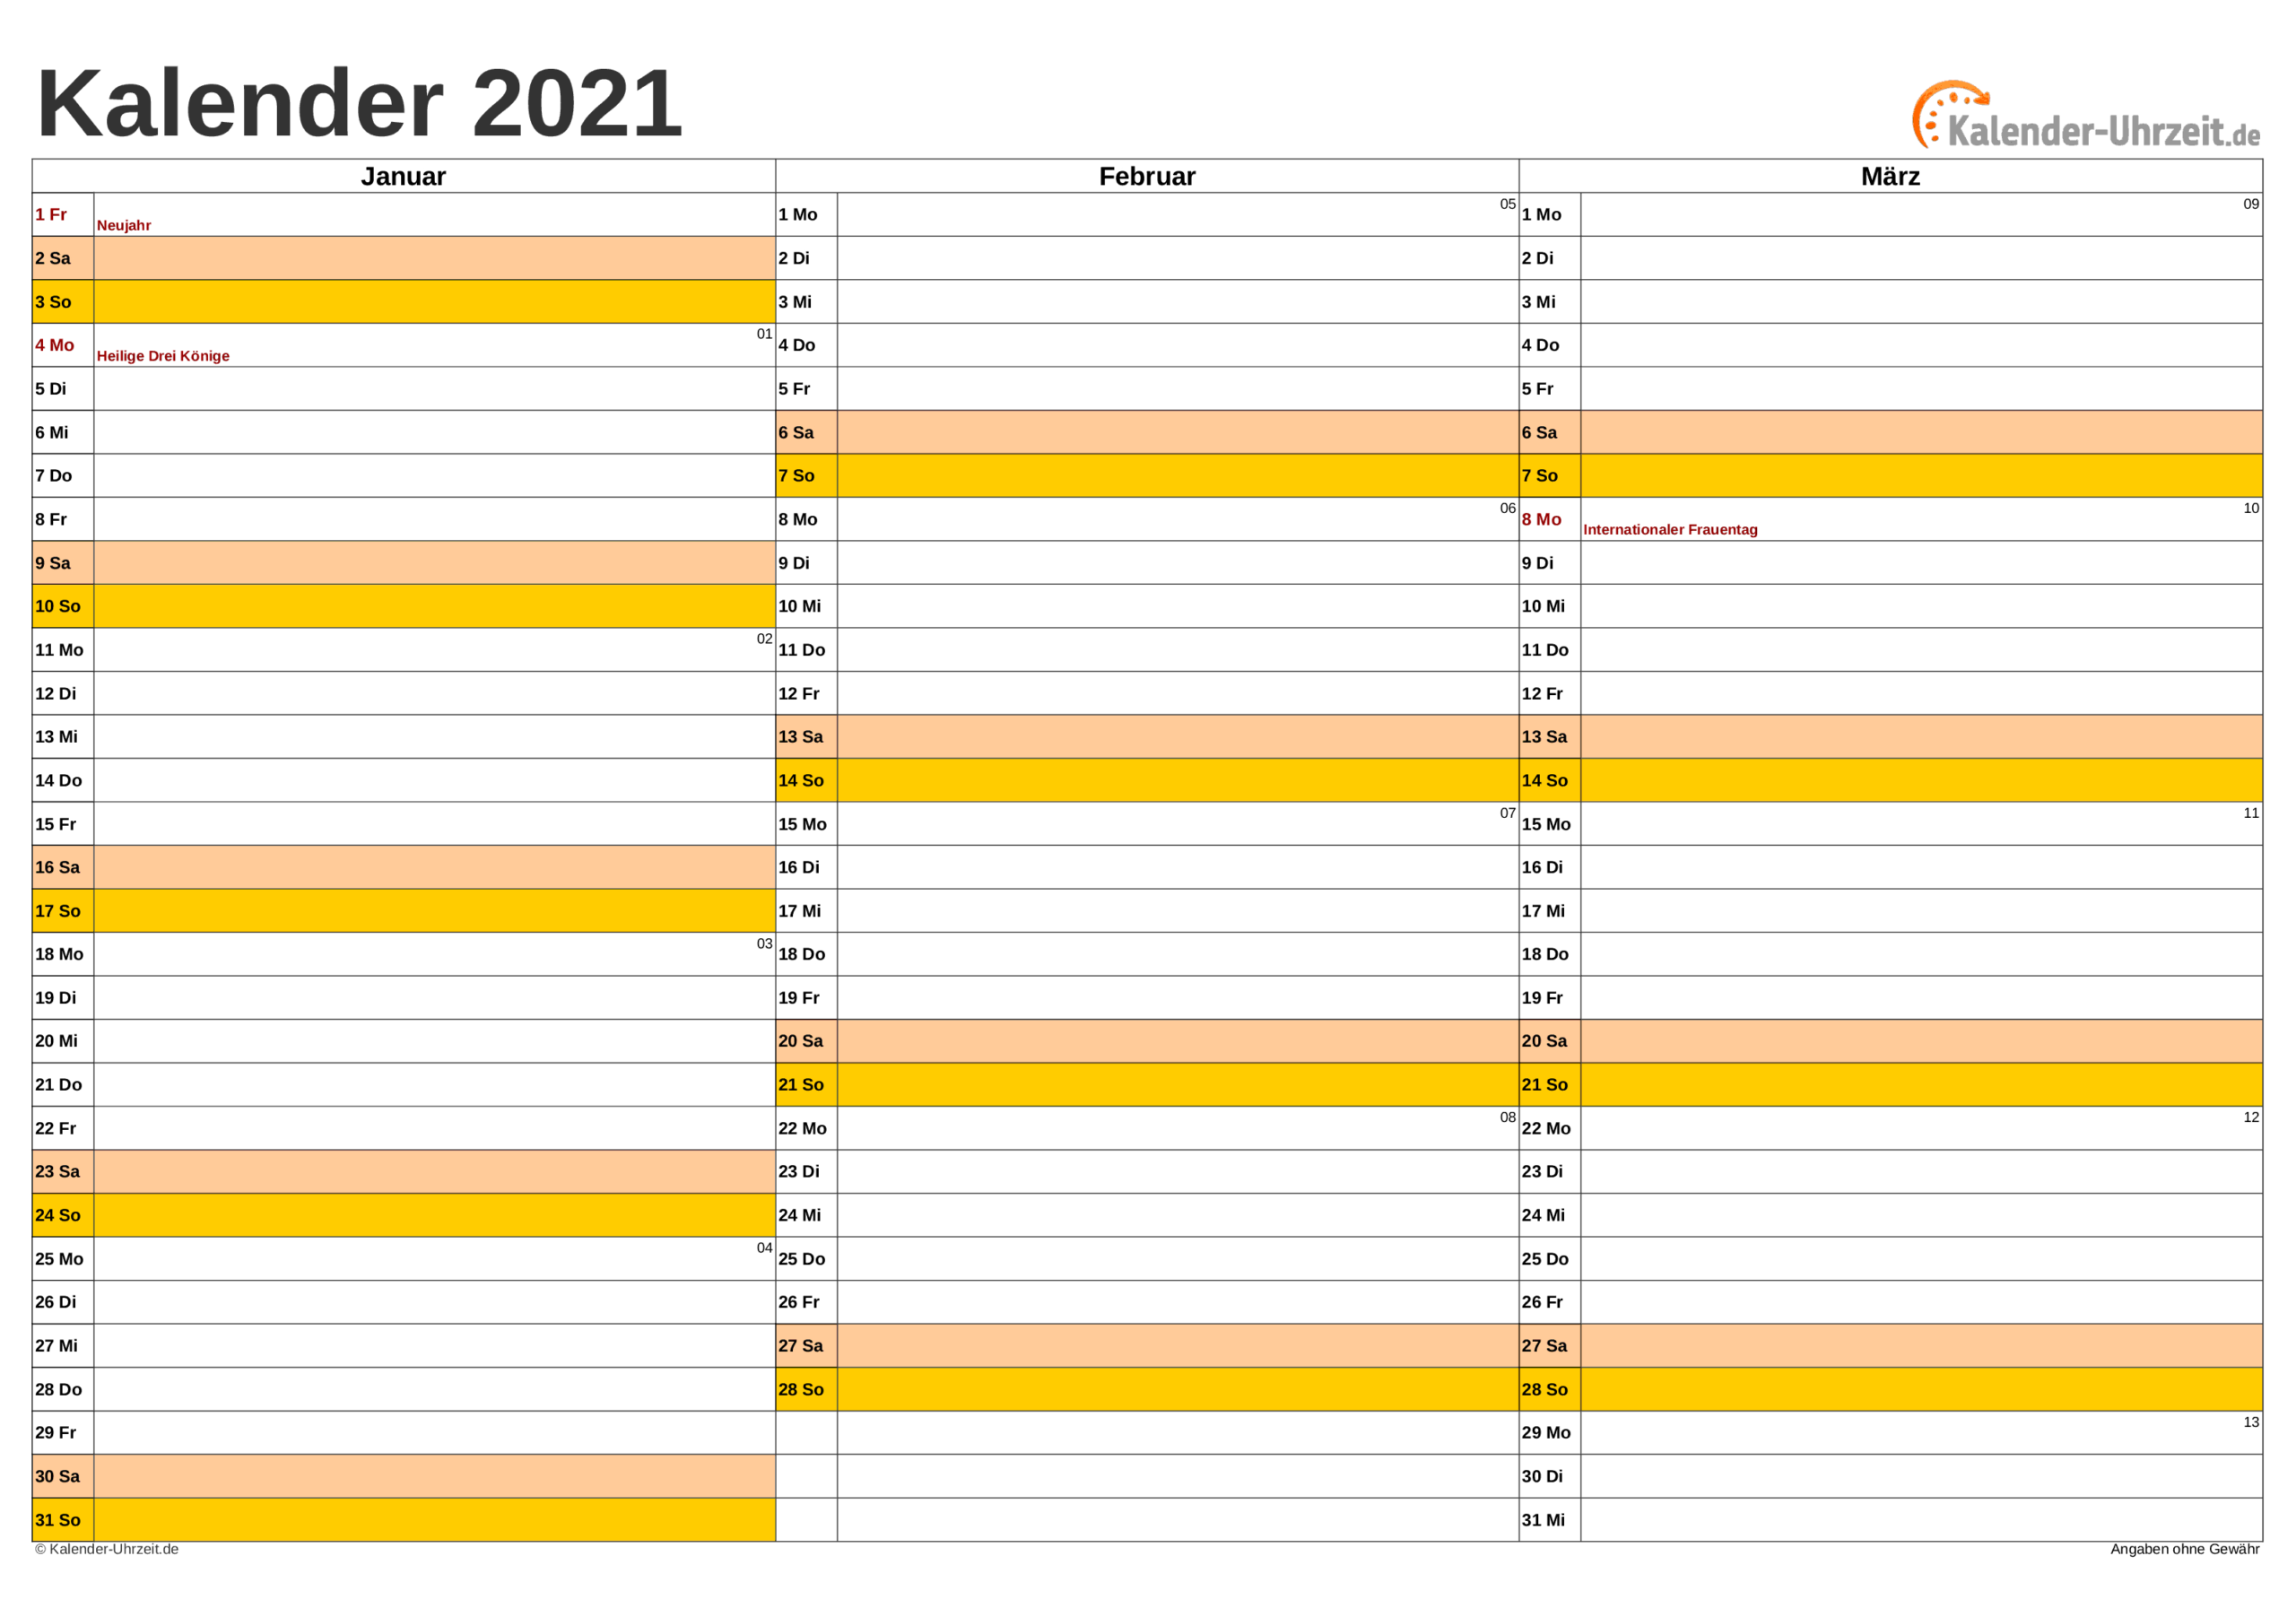 Kalender 2021 Zum Ausdrucken - Kostenlos